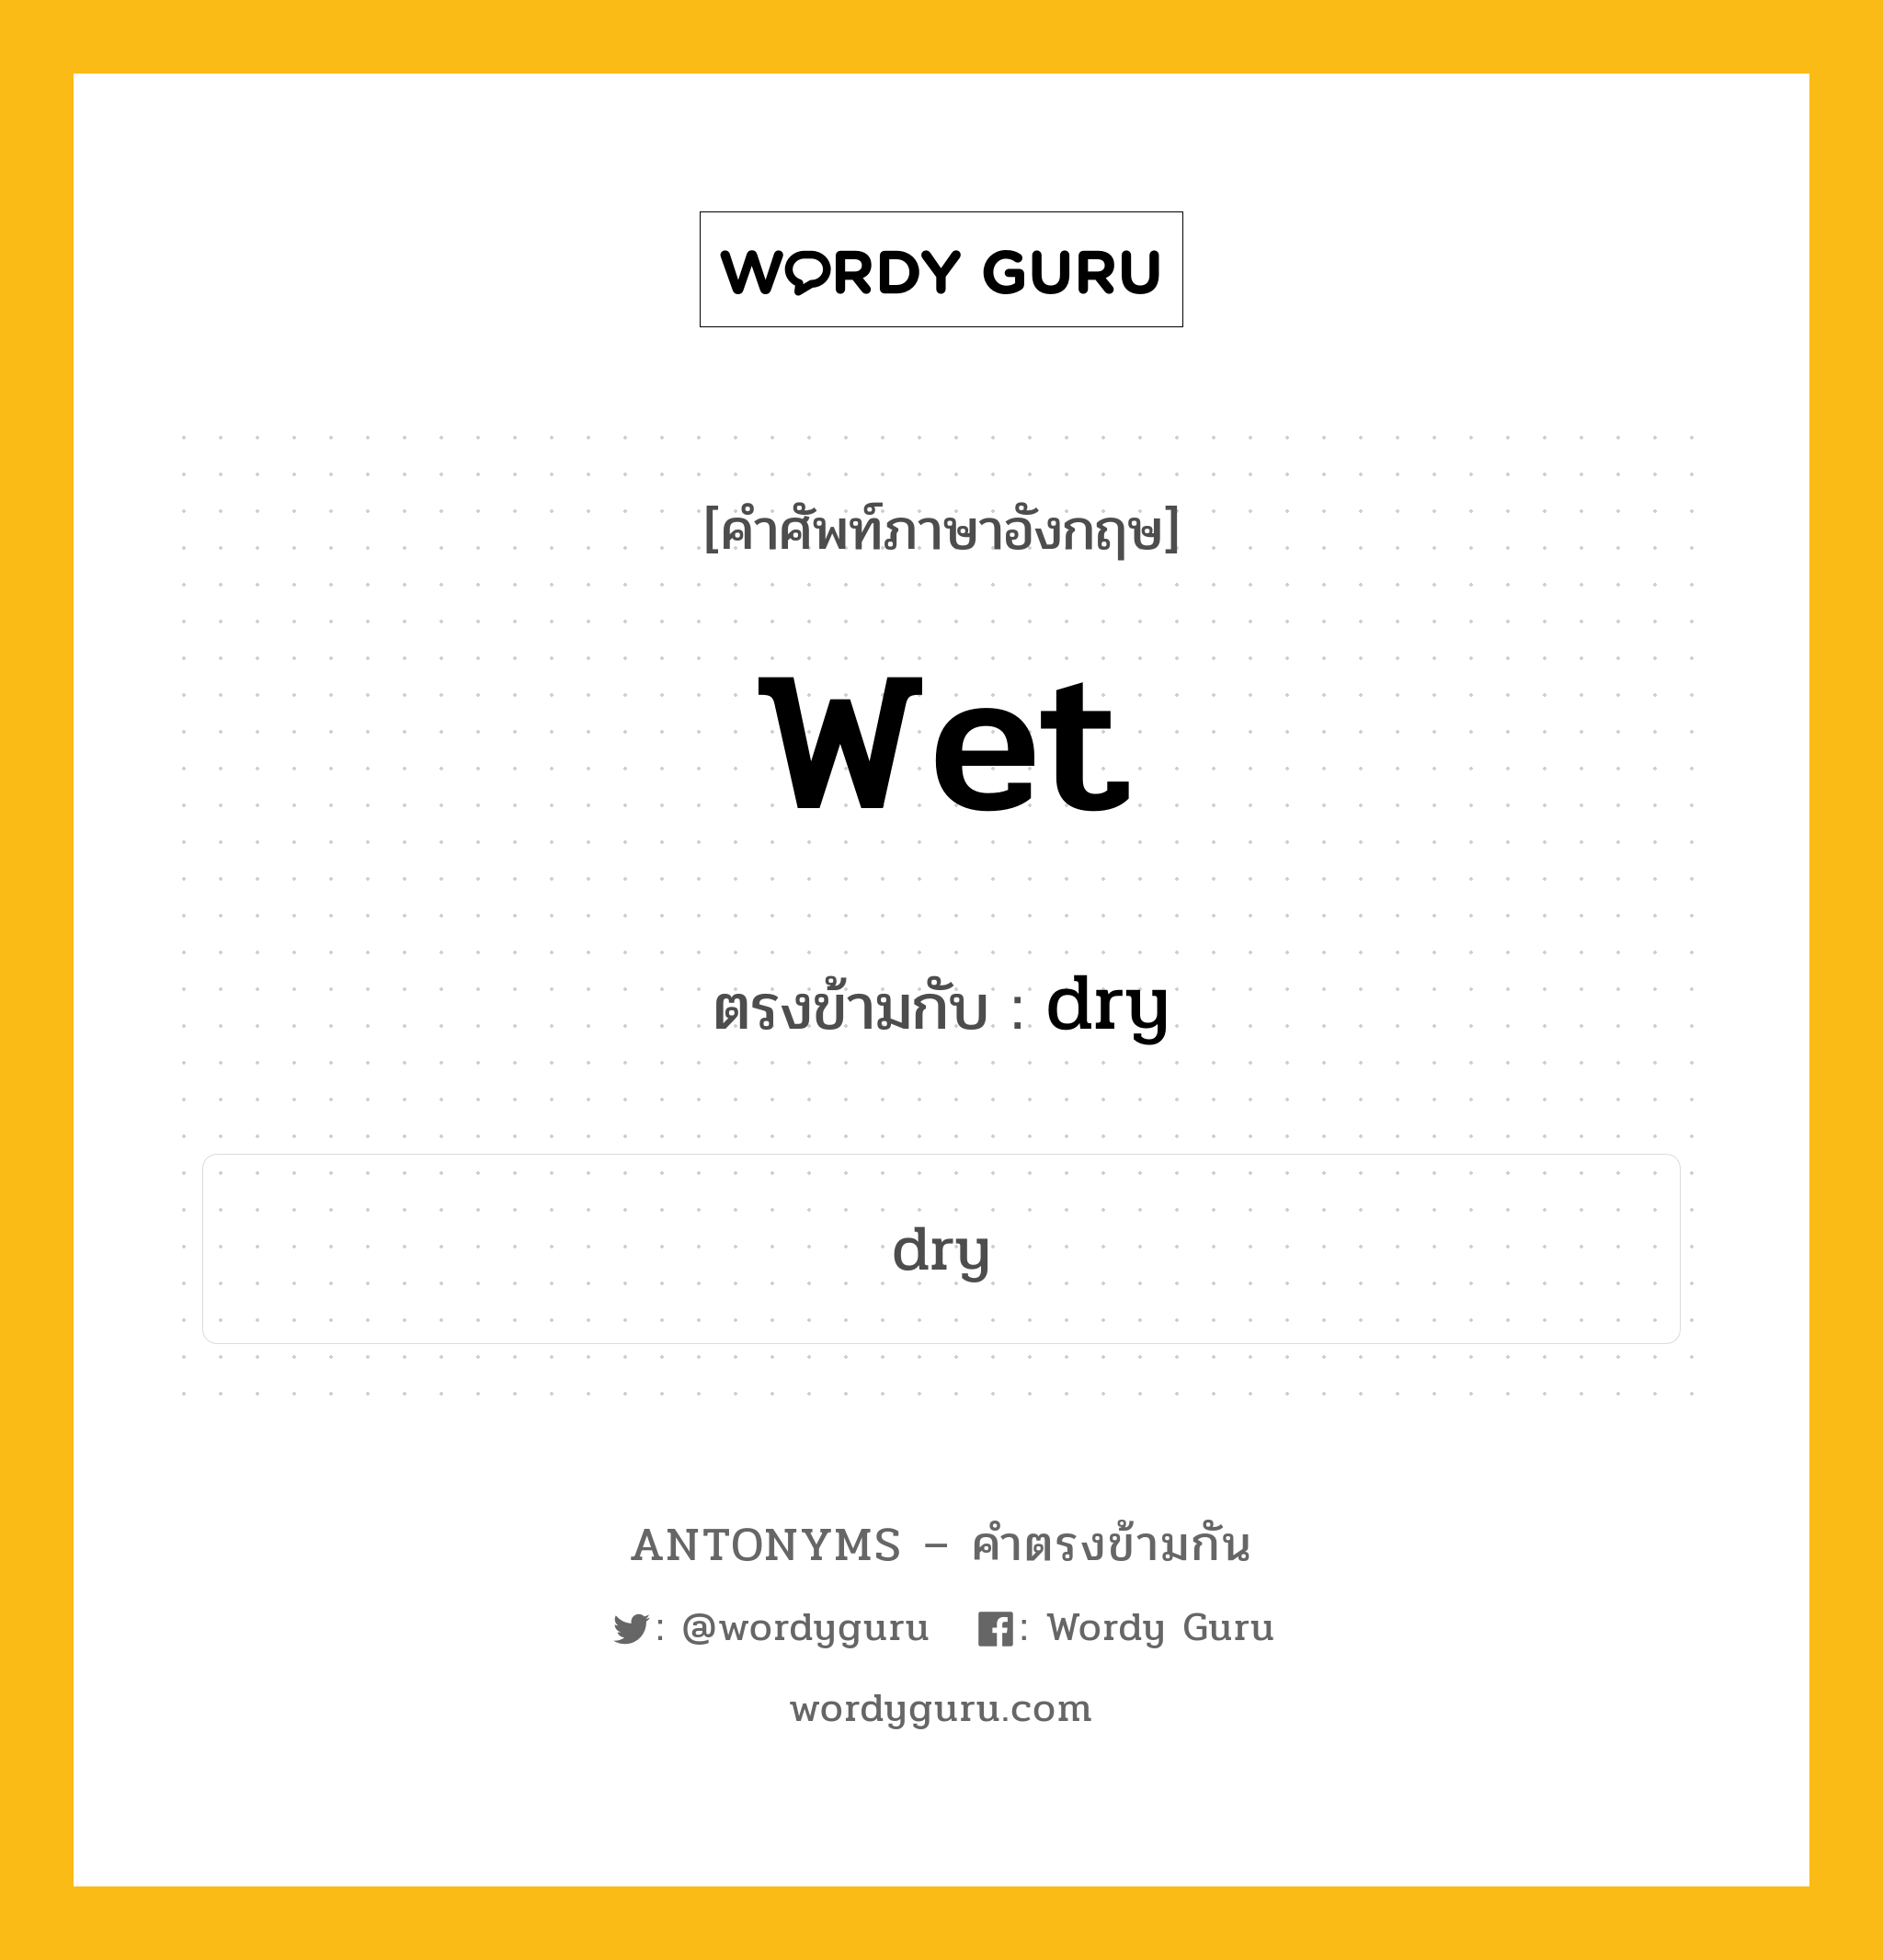 wet เป็นคำตรงข้ามกับคำไหนบ้าง?, คำศัพท์ภาษาอังกฤษ wet ตรงข้ามกับ dry หมวด dry